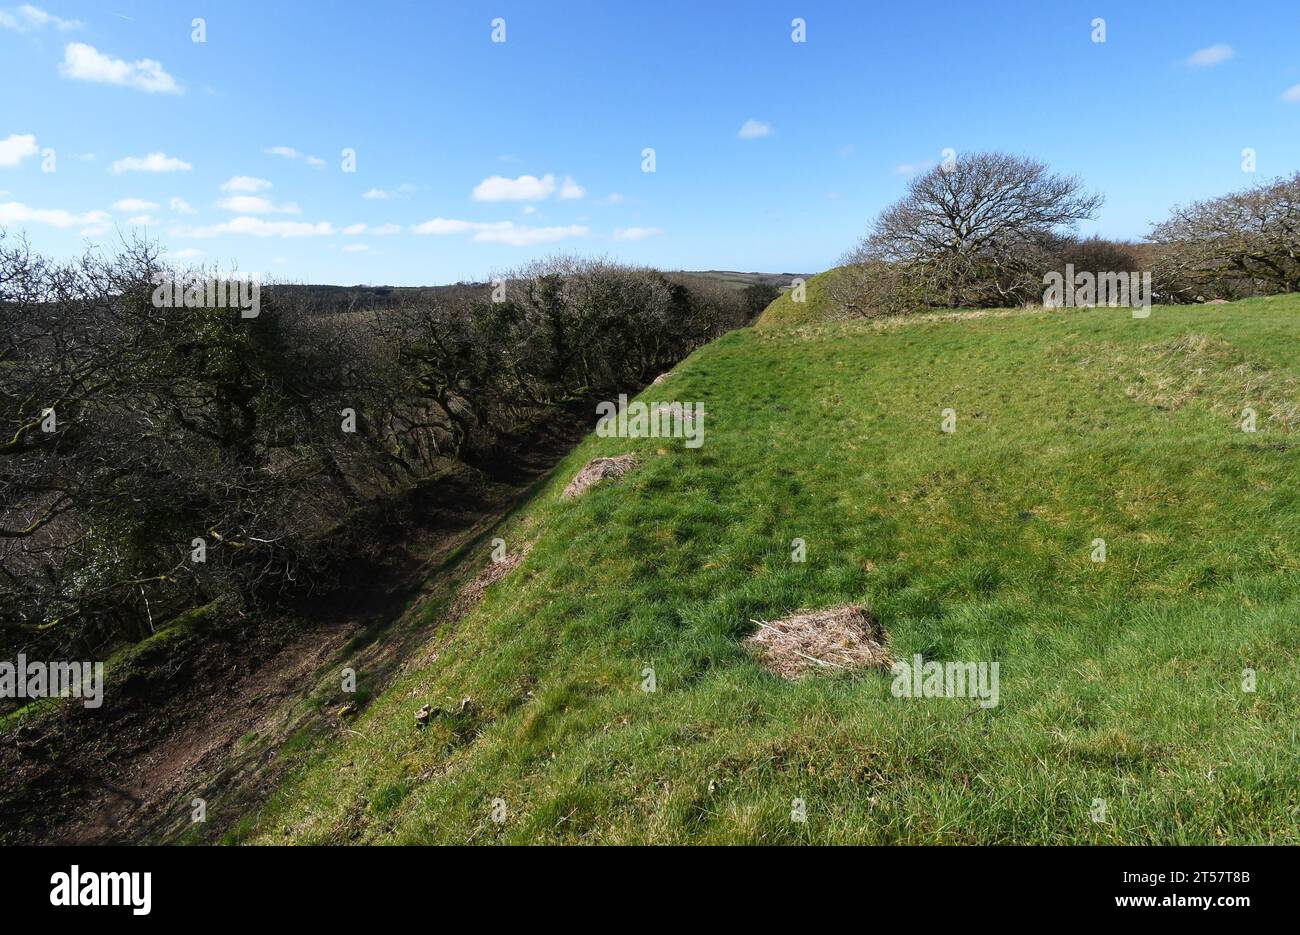 Steile Hänge der Burg Kilkhampton, auch bekannt als Penstowe Castle, mittelalterliche Festung von Motte und Bailey Bau gebaut auf einem Hügel, der von steilen s geschützt ist Stockfoto